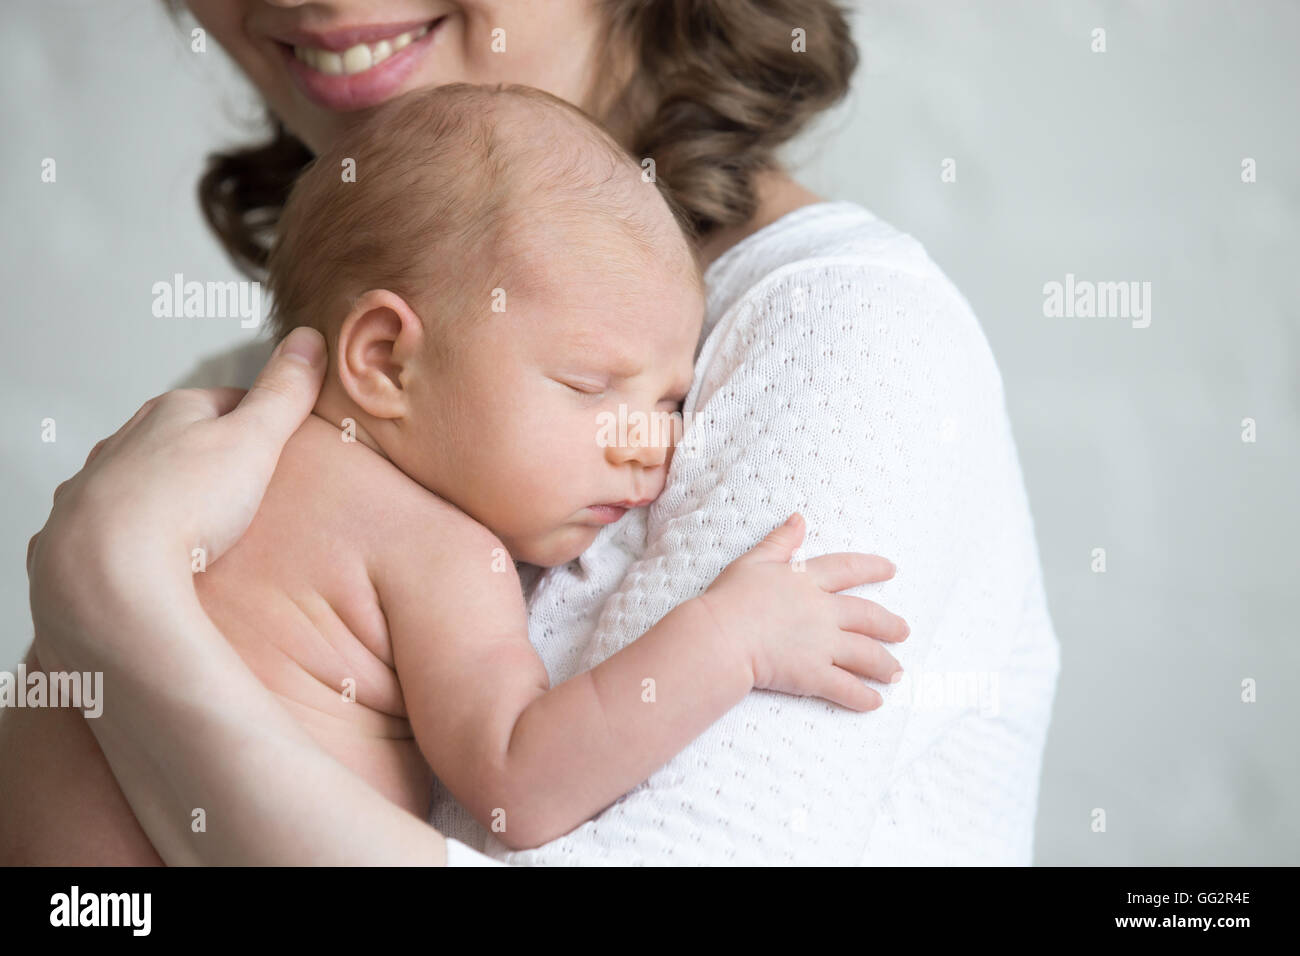 Neugeborenes Baby Nickerchen auf Frau Arme. Glückliche junge Mutter zärtlich umarmt schlafendes liebenswert gesundes neues Kind geboren Stockfoto